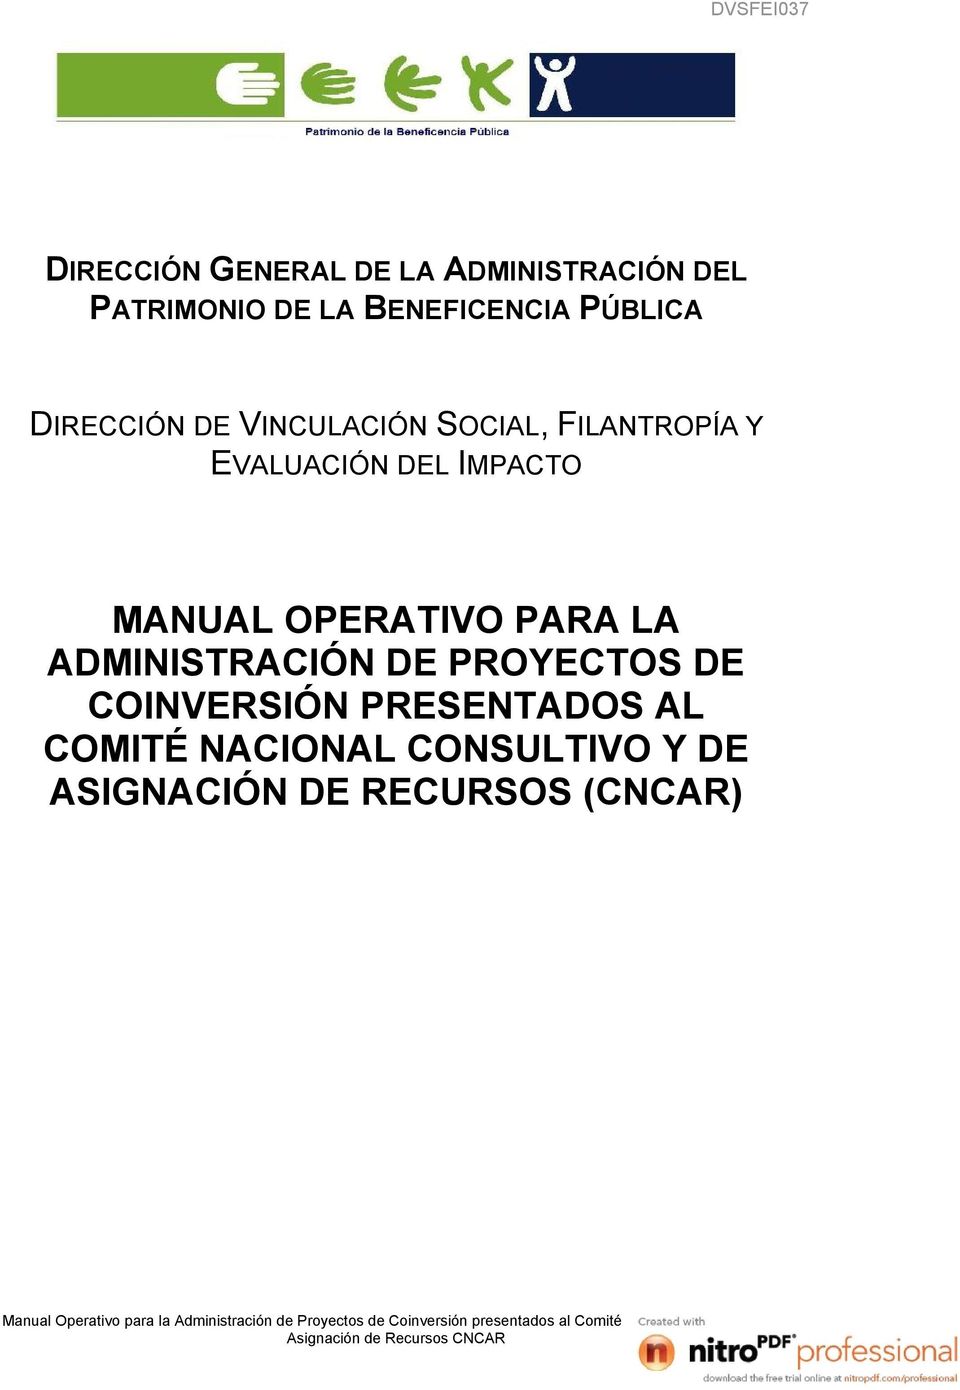 IMPACTO MANUAL OPERATIVO PARA LA ADMINISTRACIÓN DE PROYECTOS DE